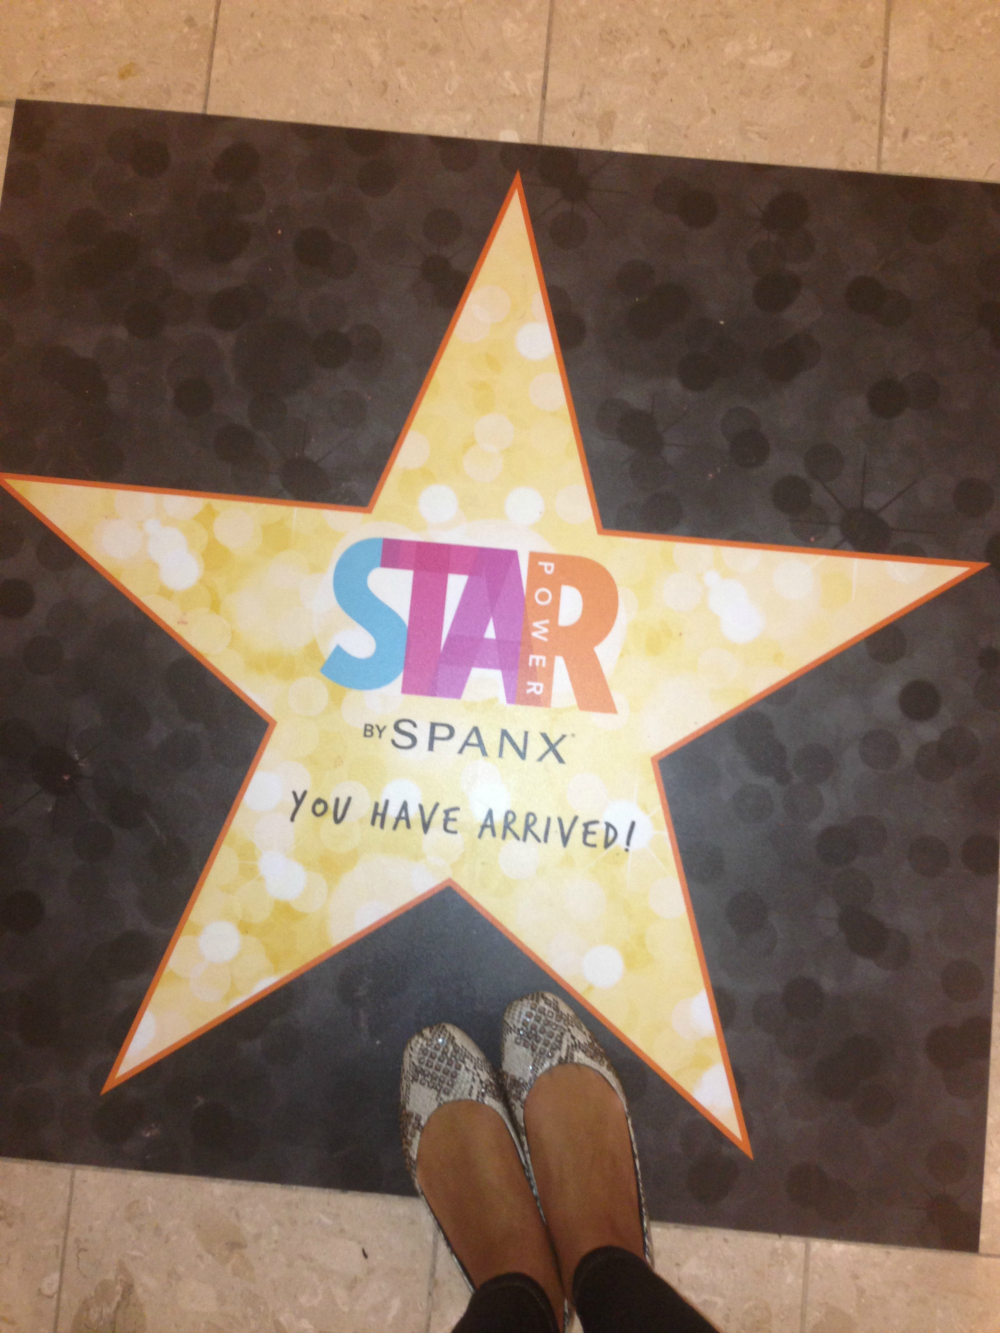 Event Recap} Spanx has STAR POWER at Macys - Kiwi The Beauty